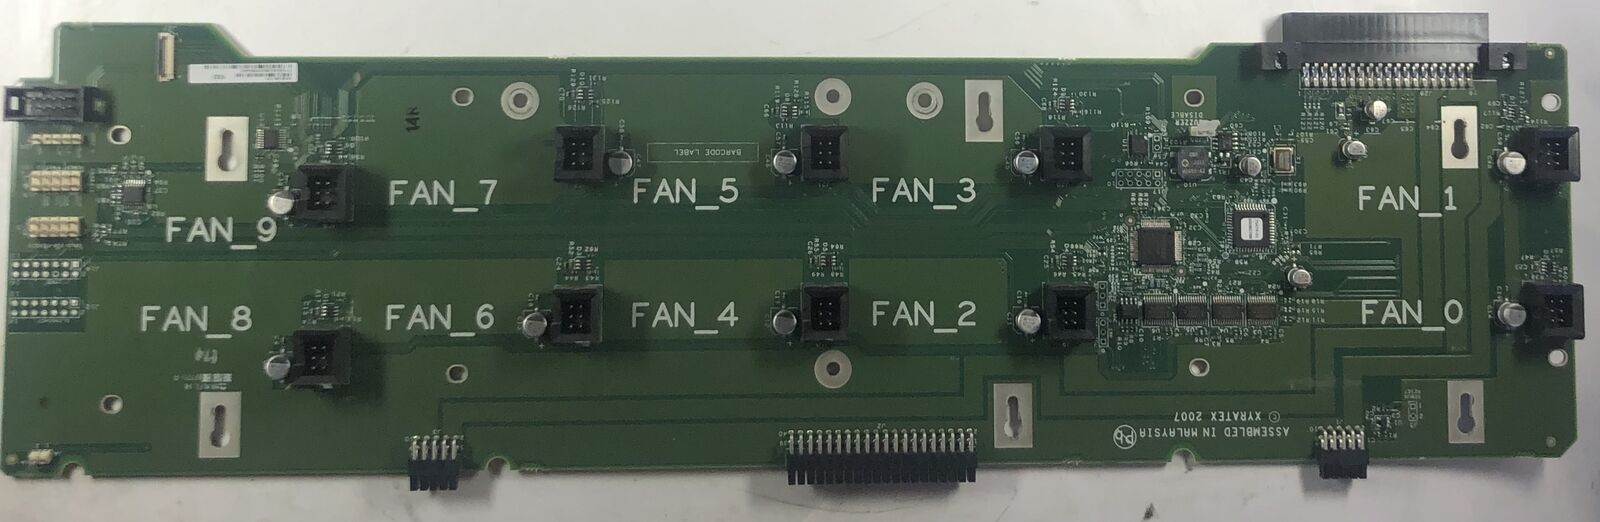 IBM Micro Server Fan Module Board- 95638-01